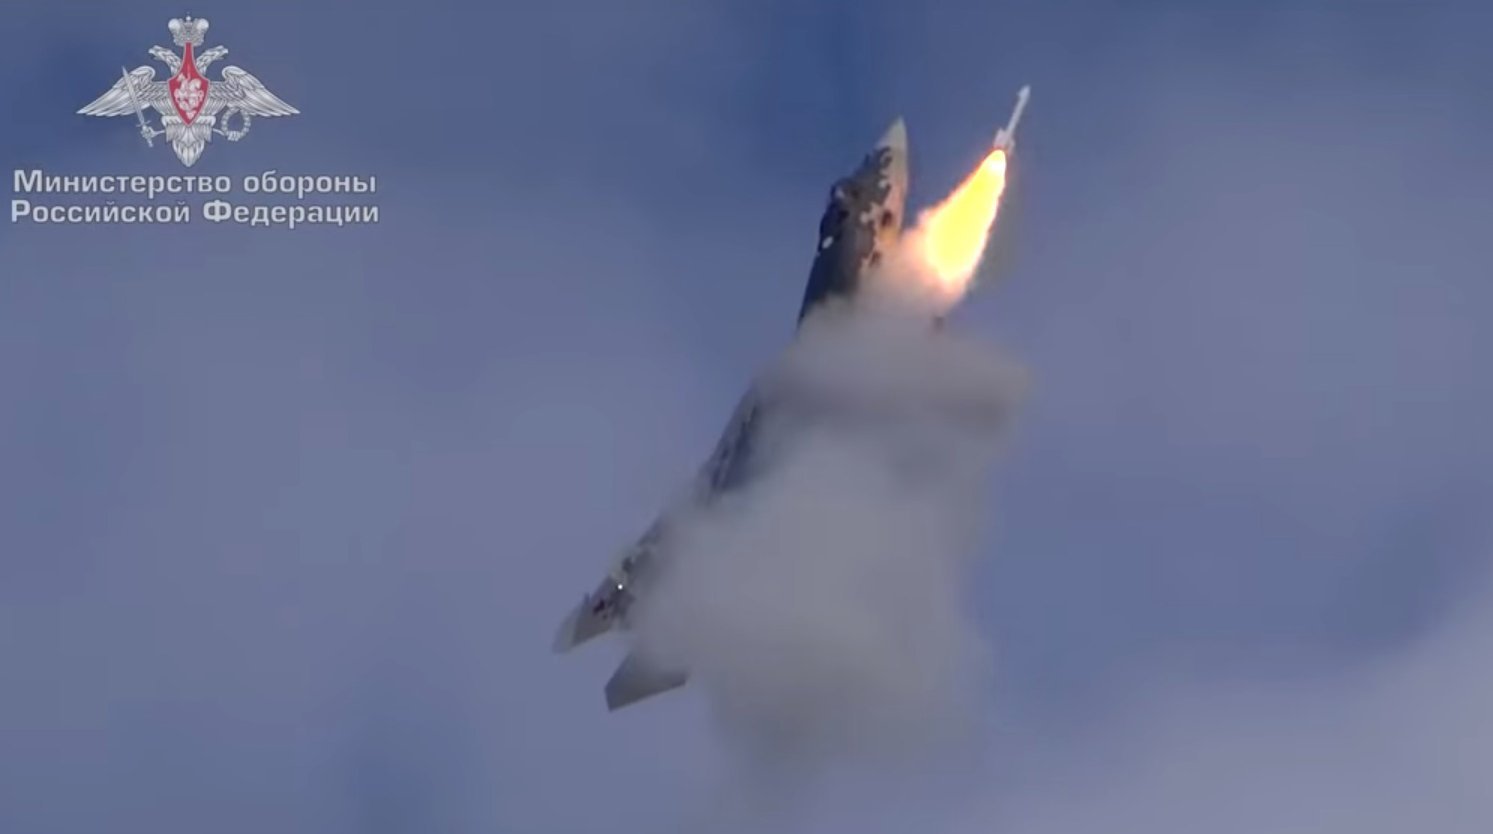 Βίντεο: Το Su-57 εκτελεί εκτόξευση πυραύλου με υψηλή γωνία προσβολής